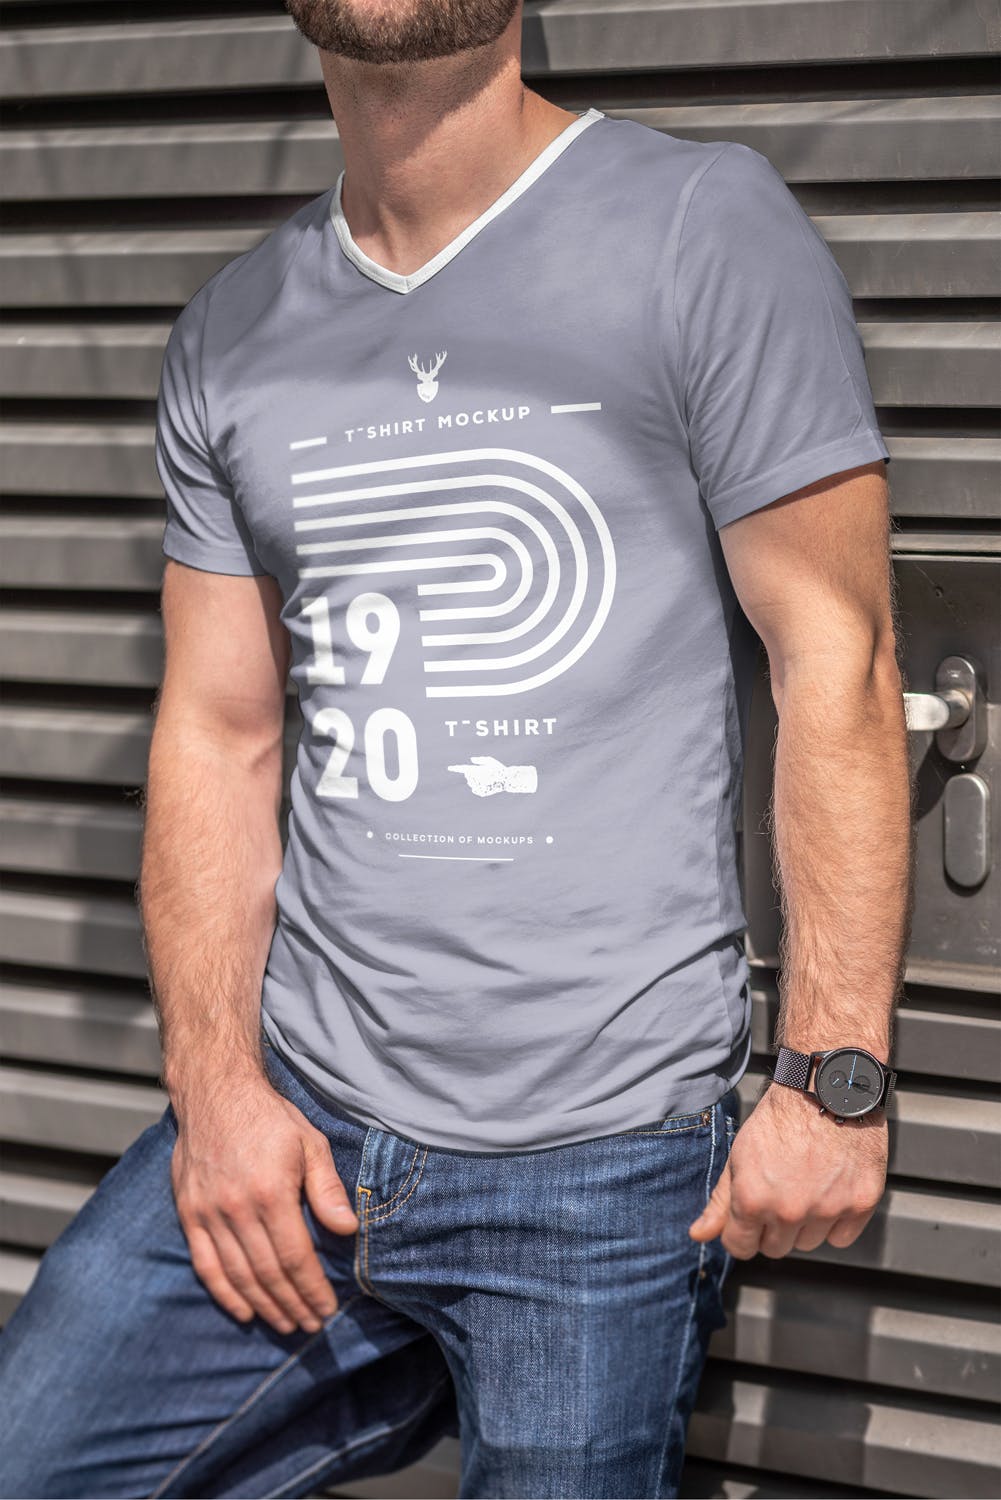 男士印花T恤真实模特上身效果图样机第一素材精选模板 T-Shirt Mock-up 5插图(7)